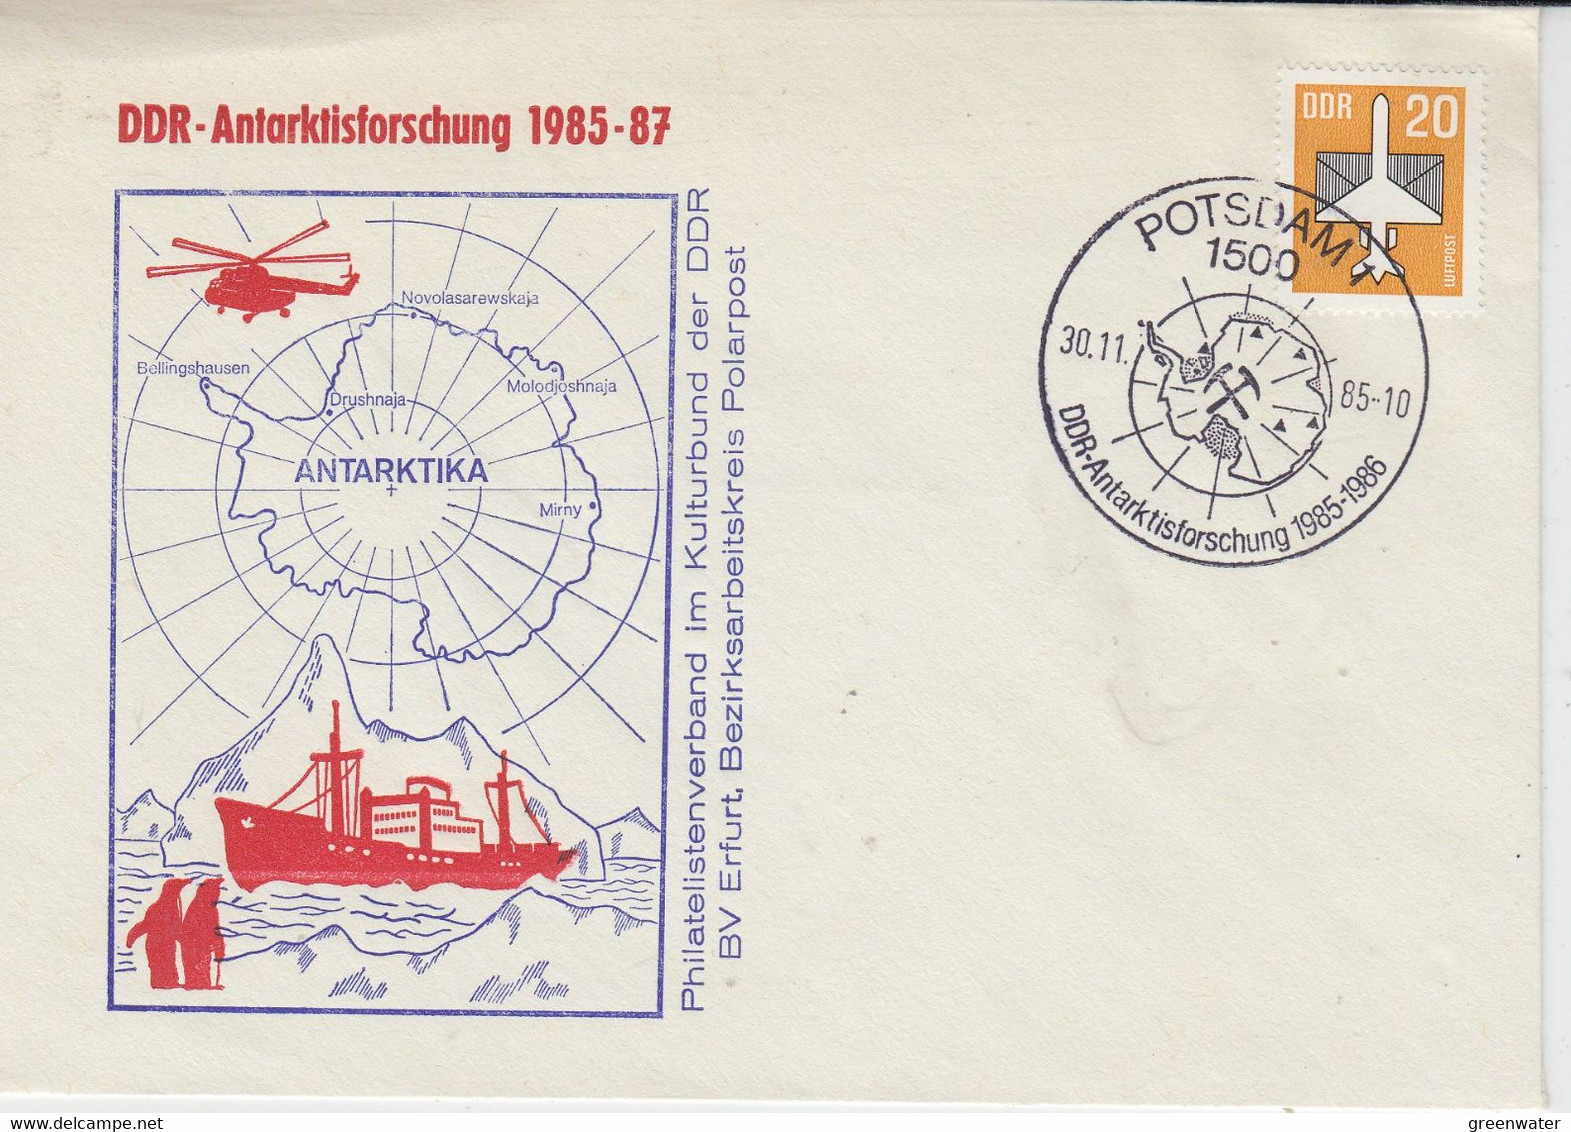 DDR 1985 Antarktisforschung DDRCa Potsdam 30-11-1985 (58020) - Programas De Investigación